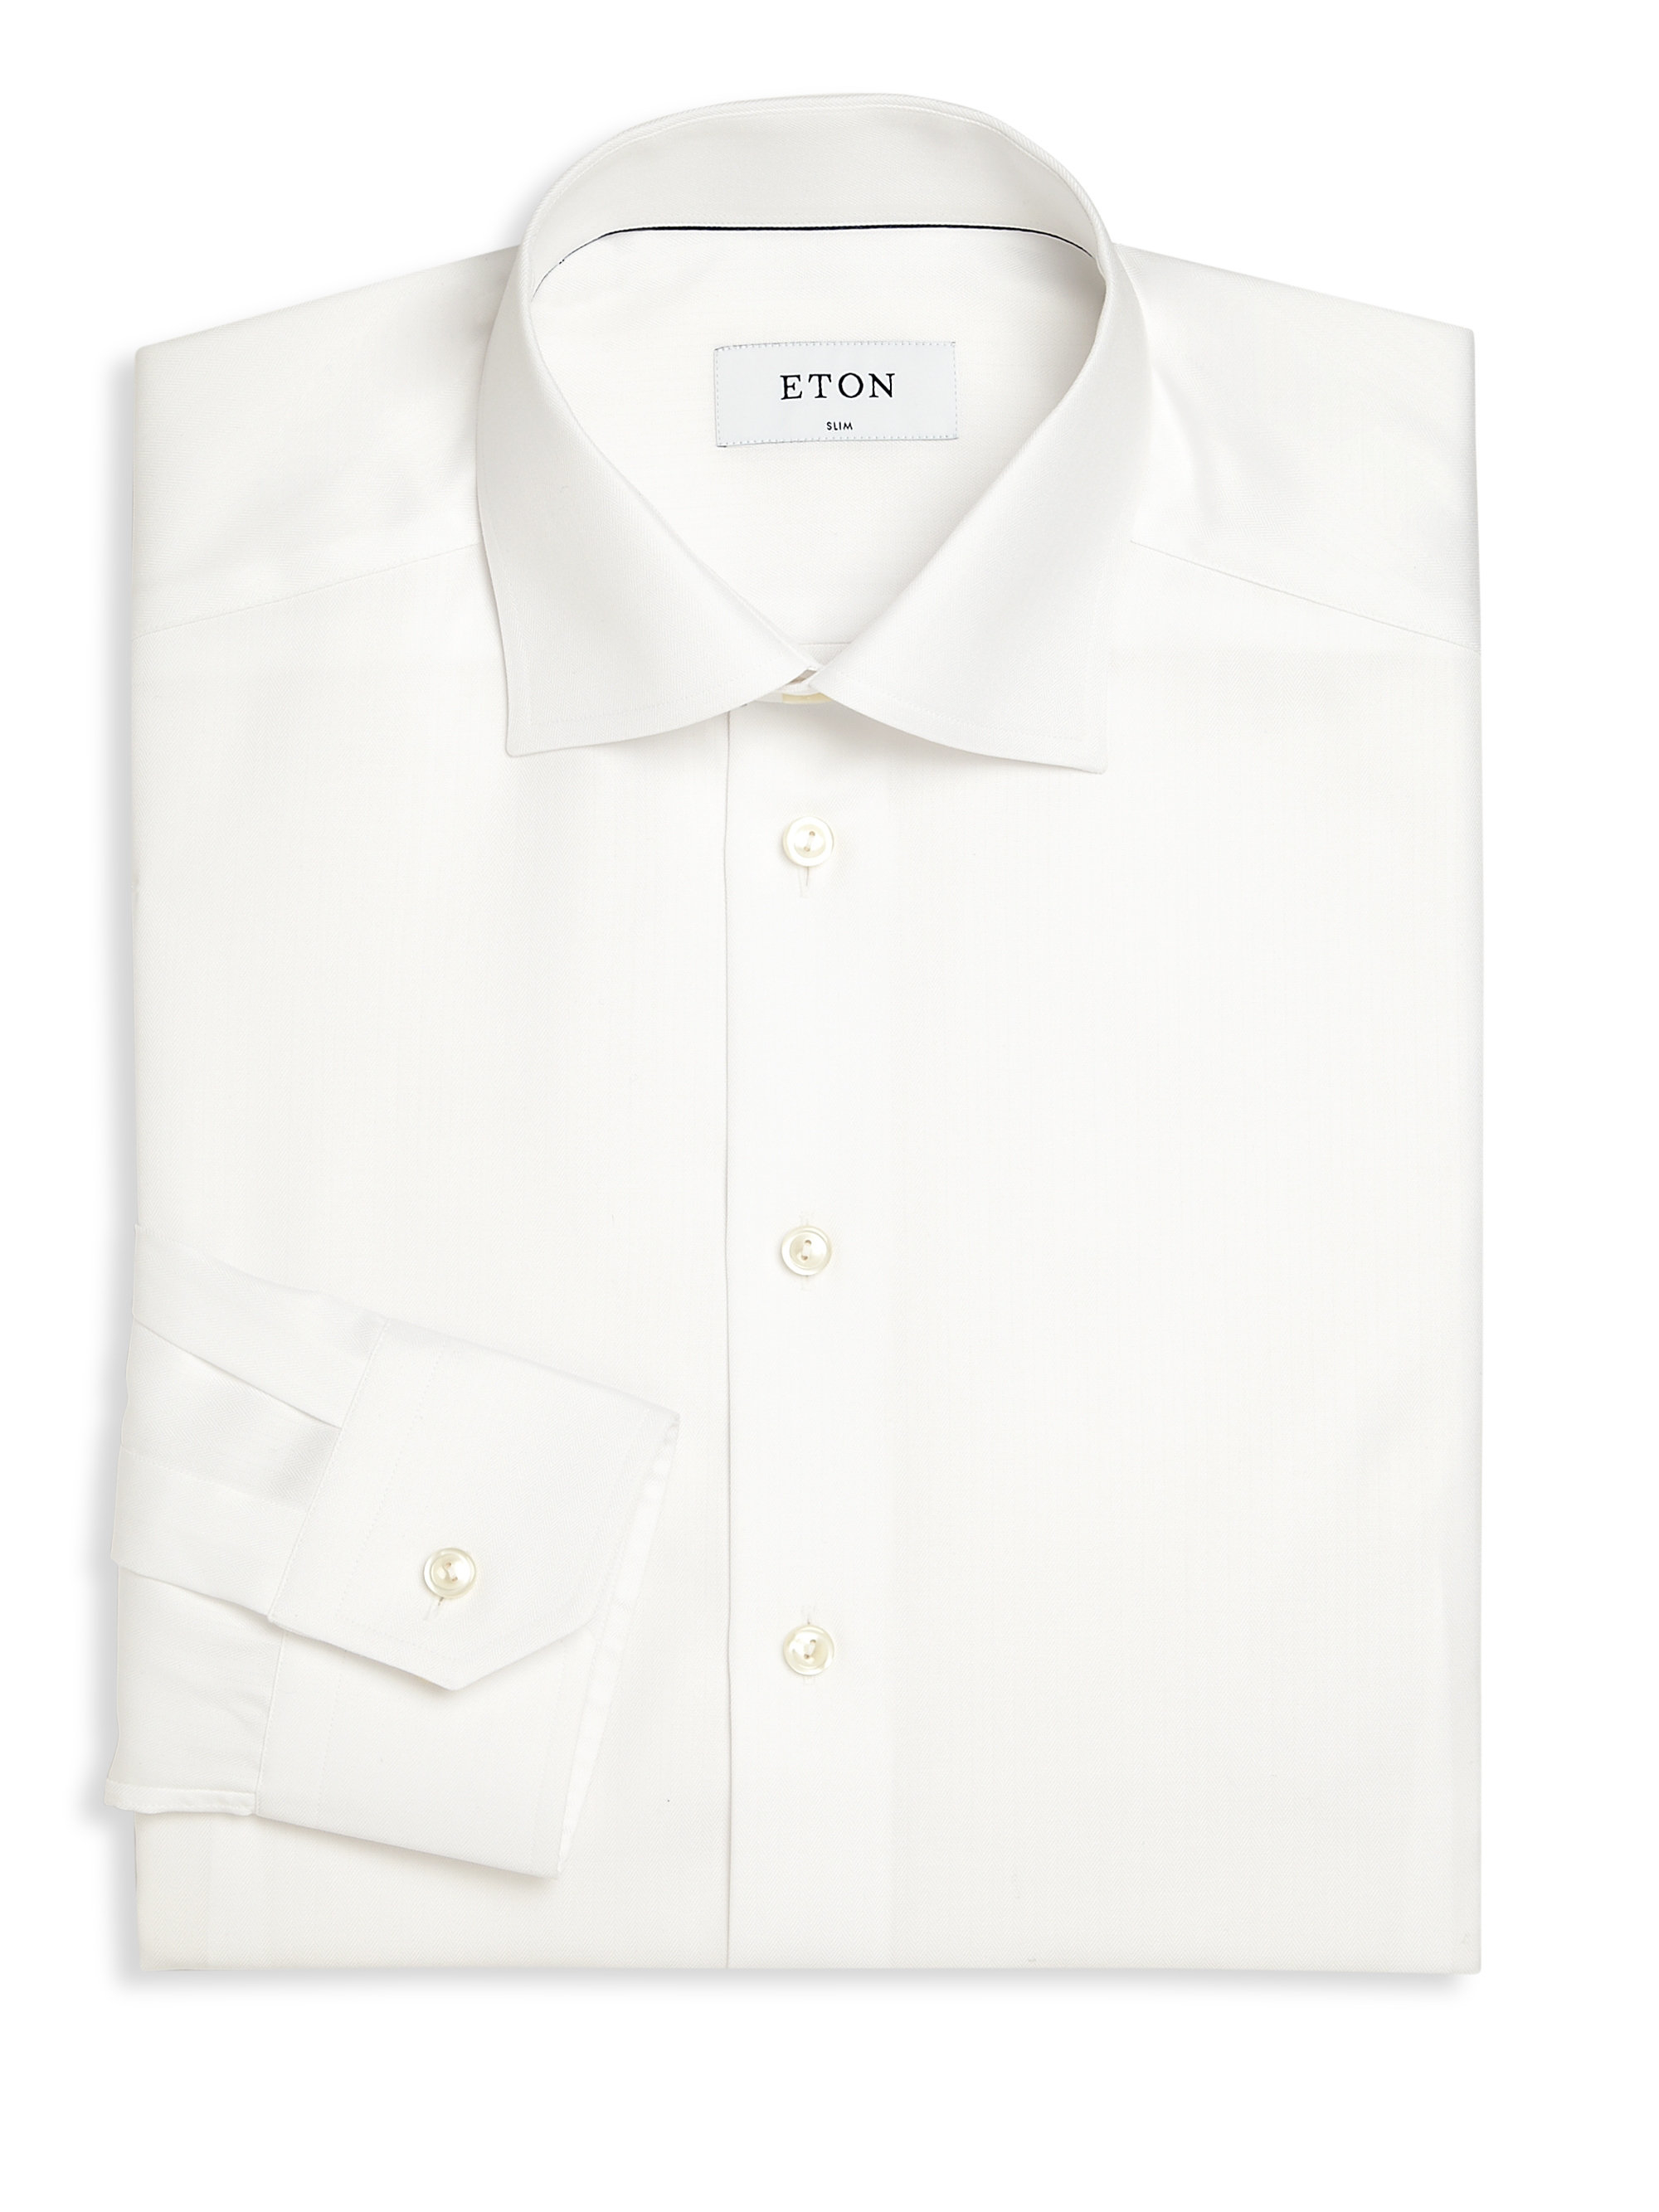 Eton of sweden Herringbone  Patterned Dress  Shirt  in White  